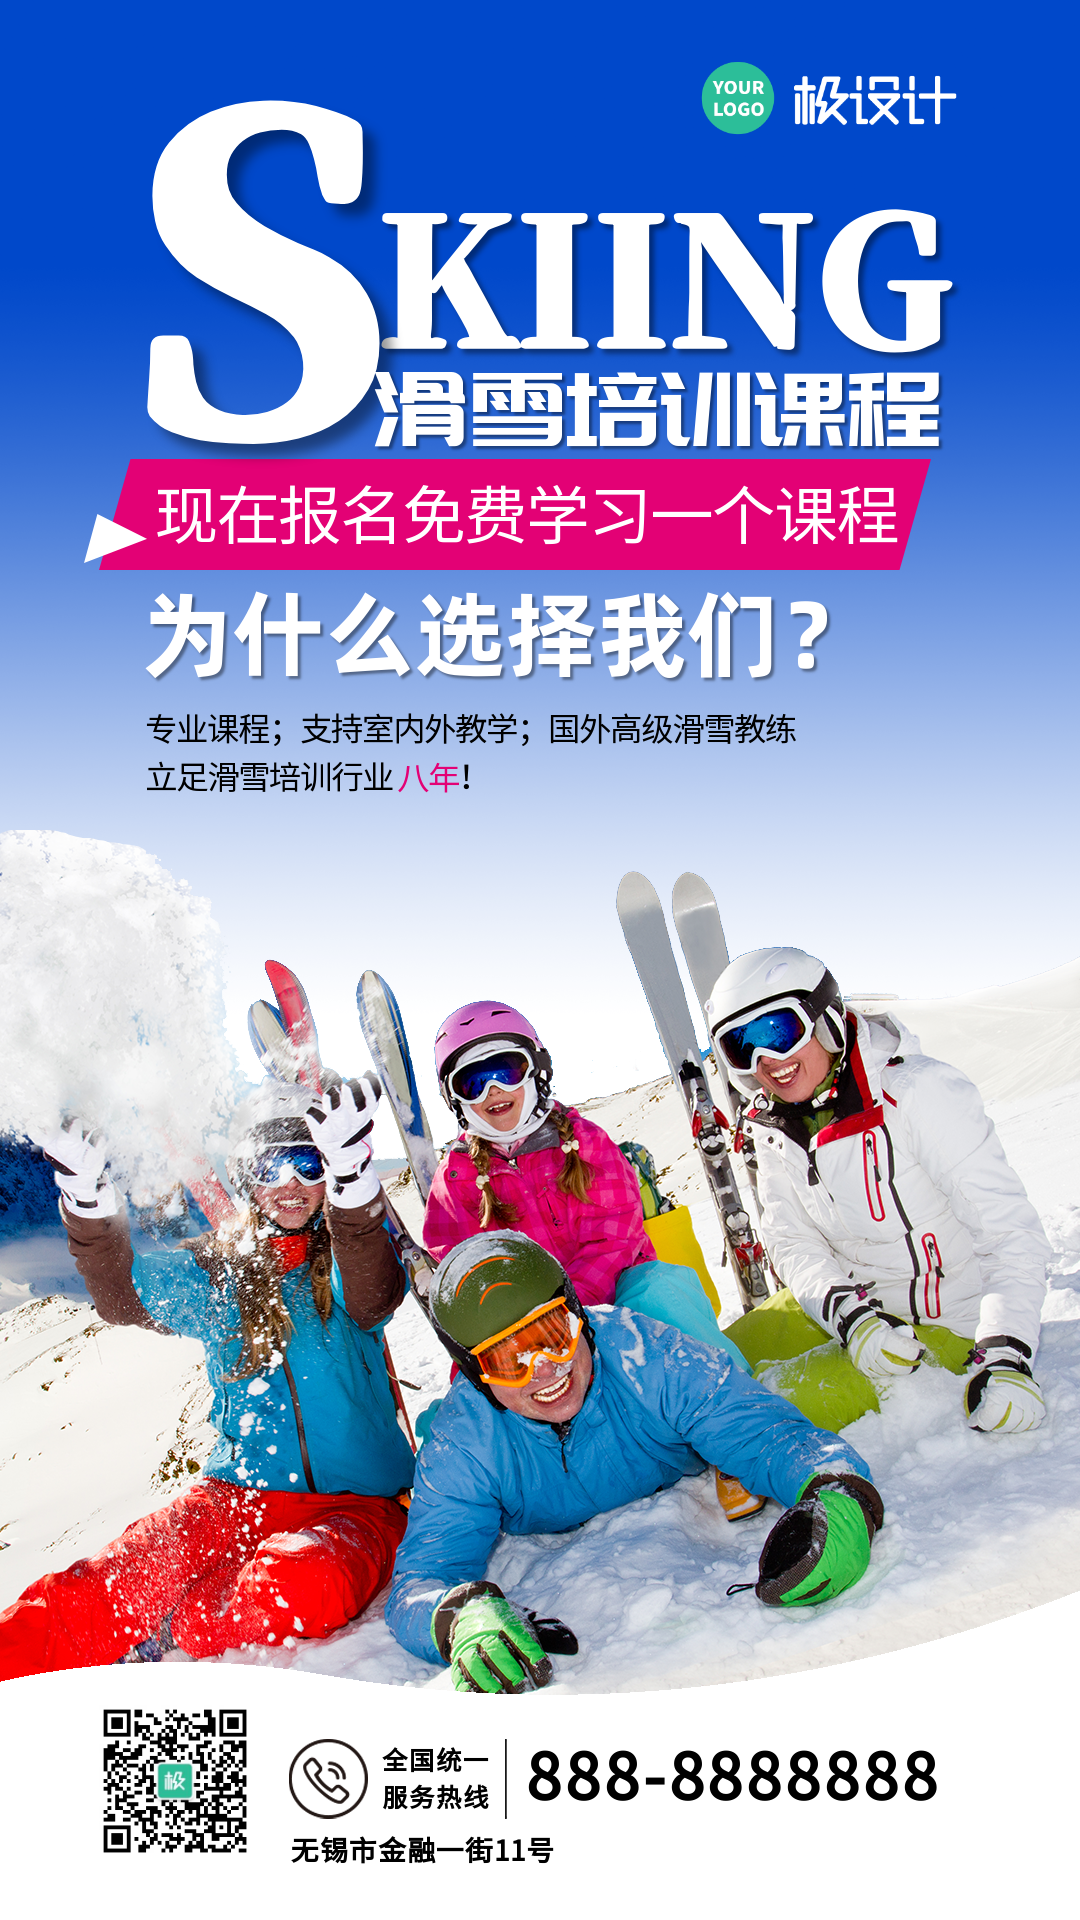 免费体验滑雪课程-竖